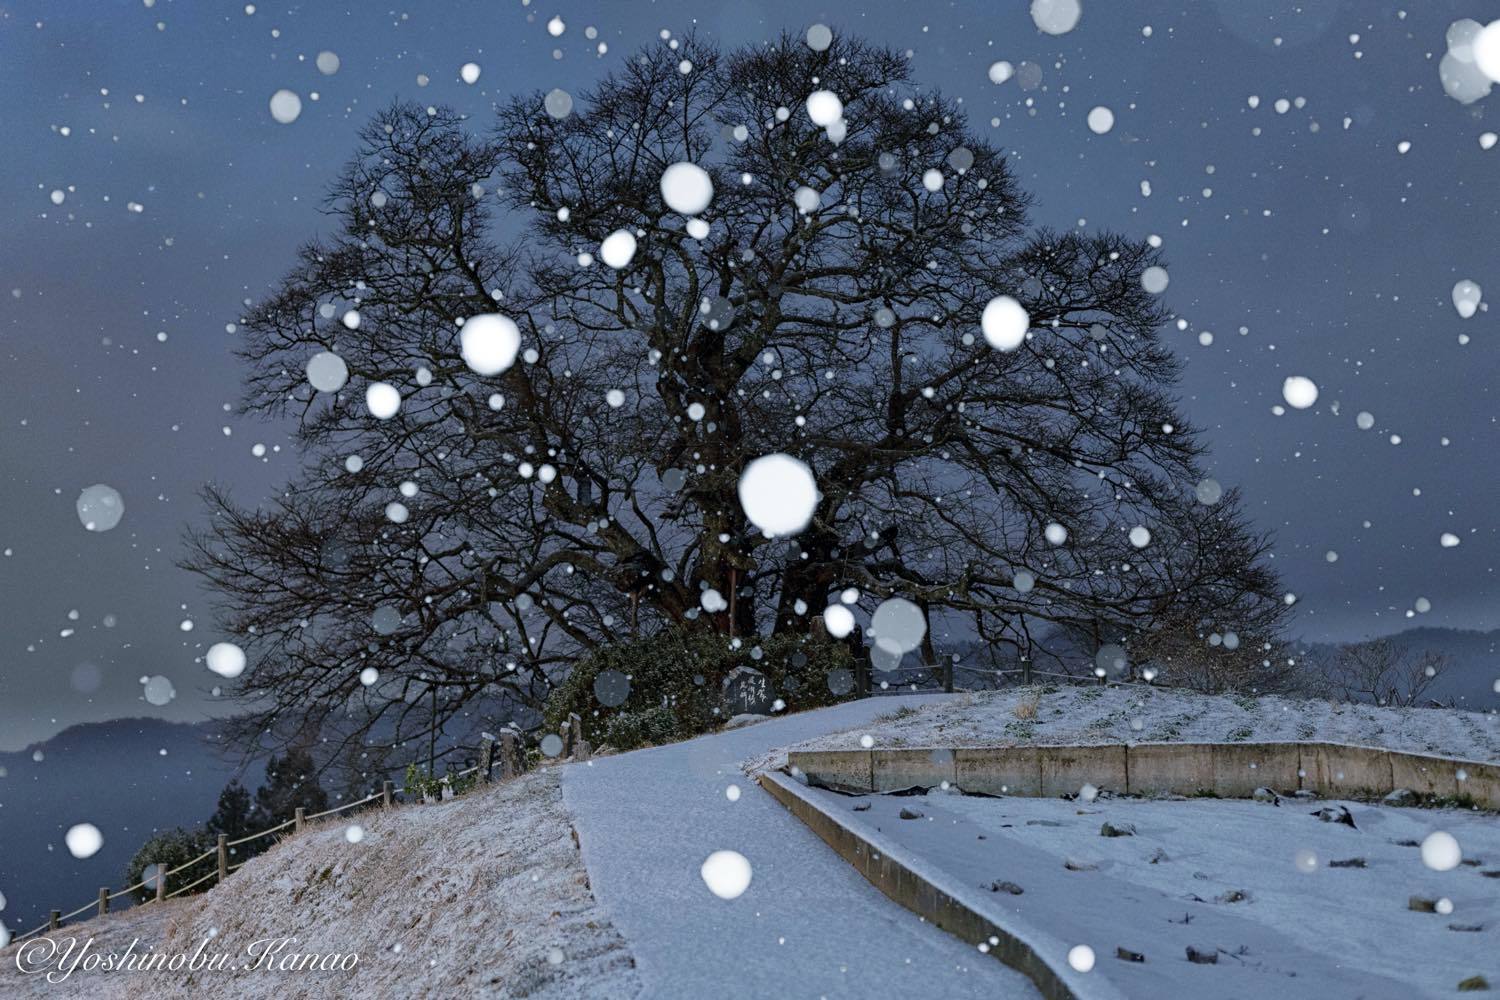 降雪から積雪へ : 写真ブログ「四季の詩」